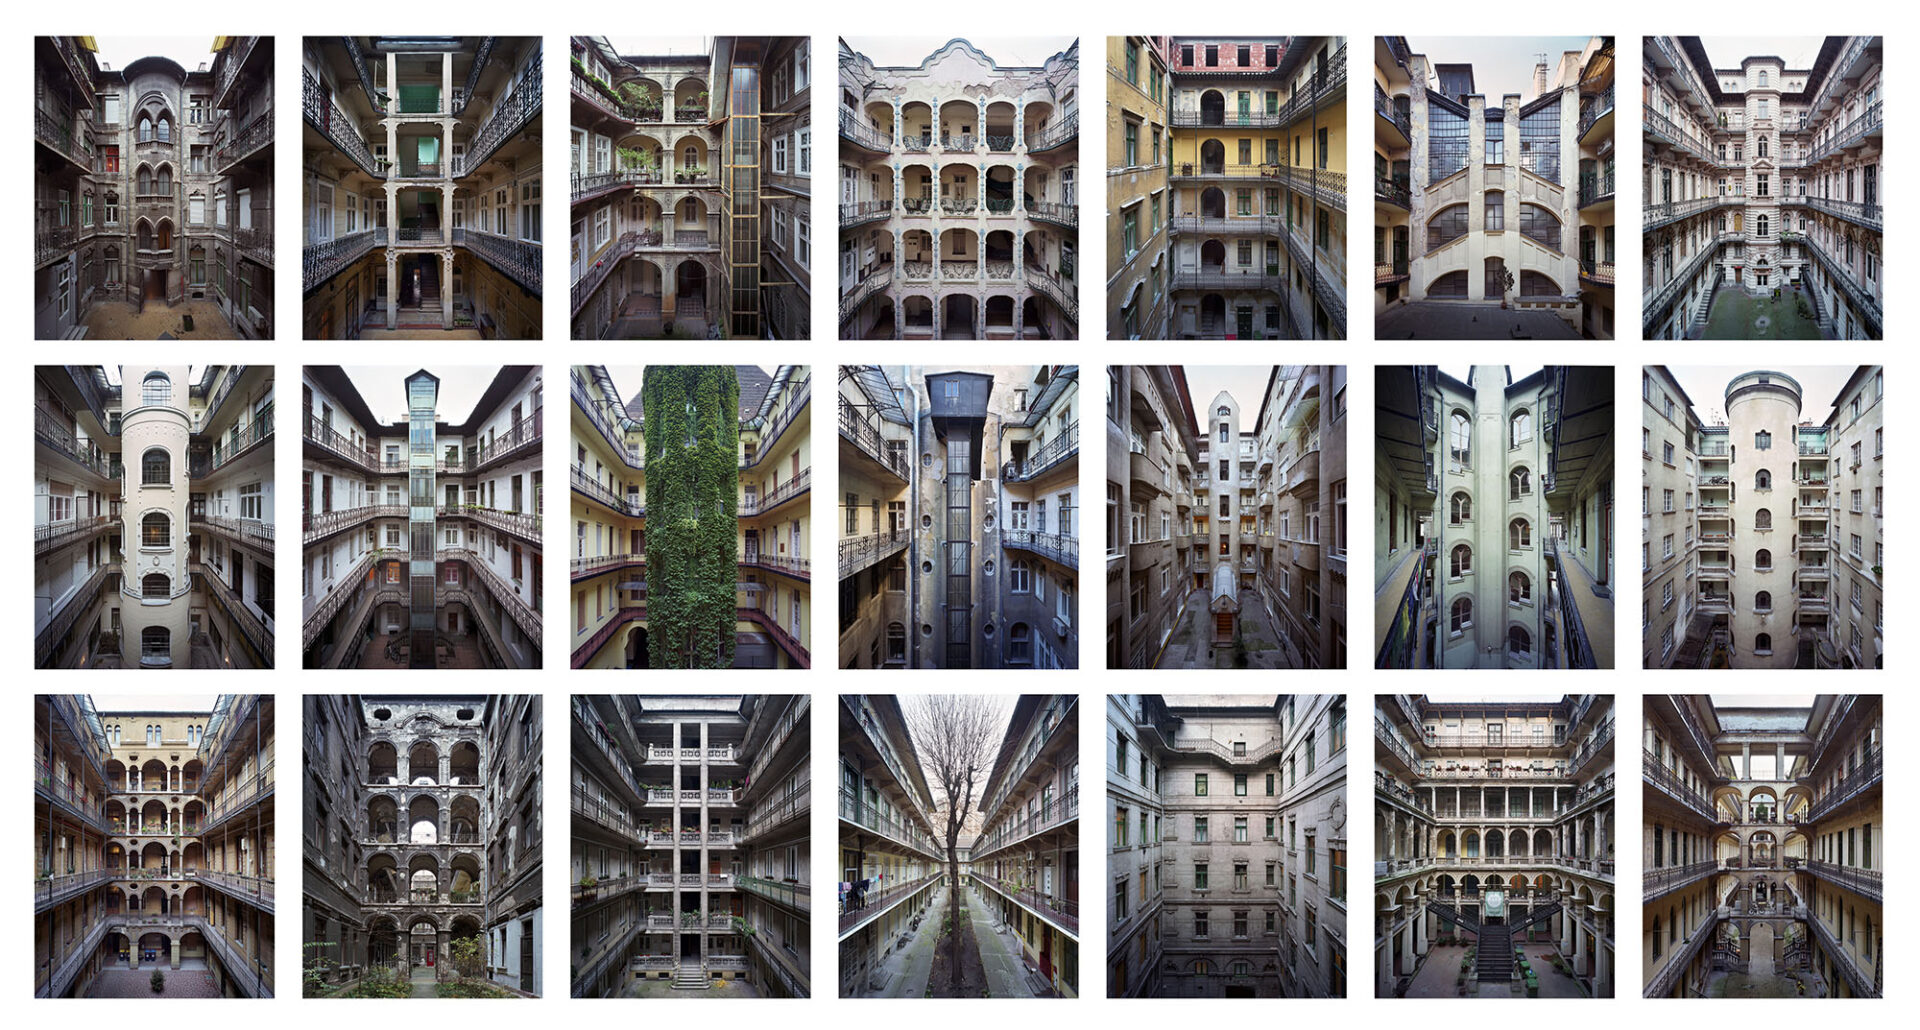 Typology #1, 2014-2016 tirée de la série « Budapest Courtyards », © Yves Marchand et Romain Meffre